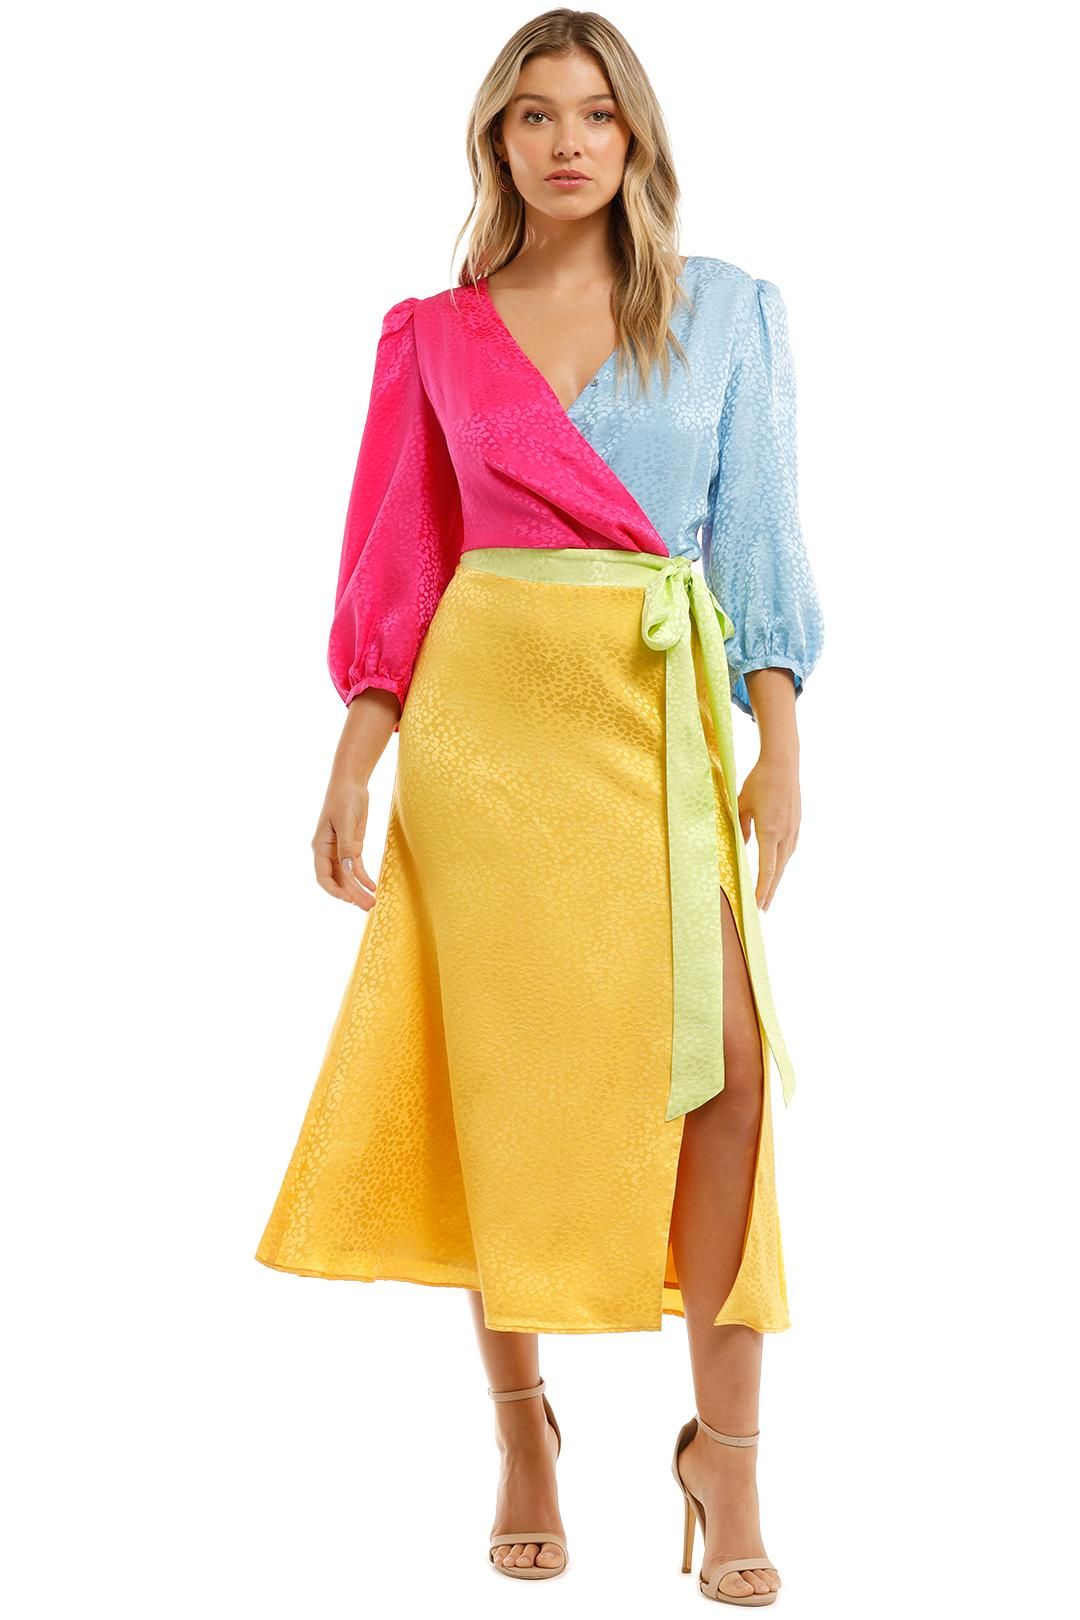 Olivia Rubin  Paloma Dress Pink Blue Yellow